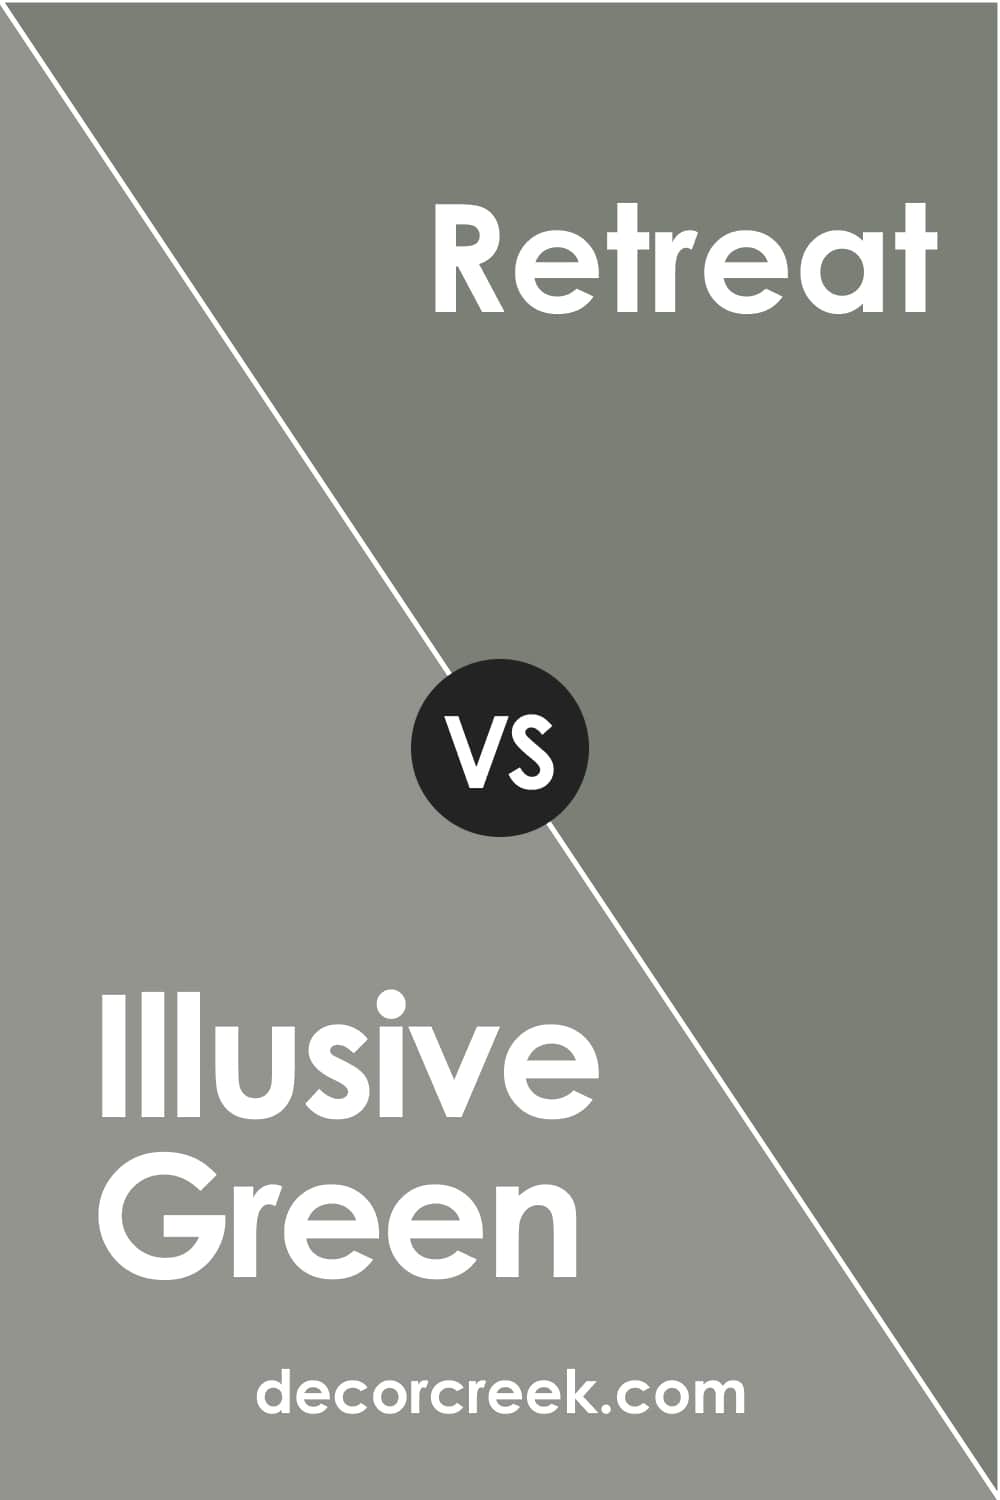 Illusive Green vs Retreat